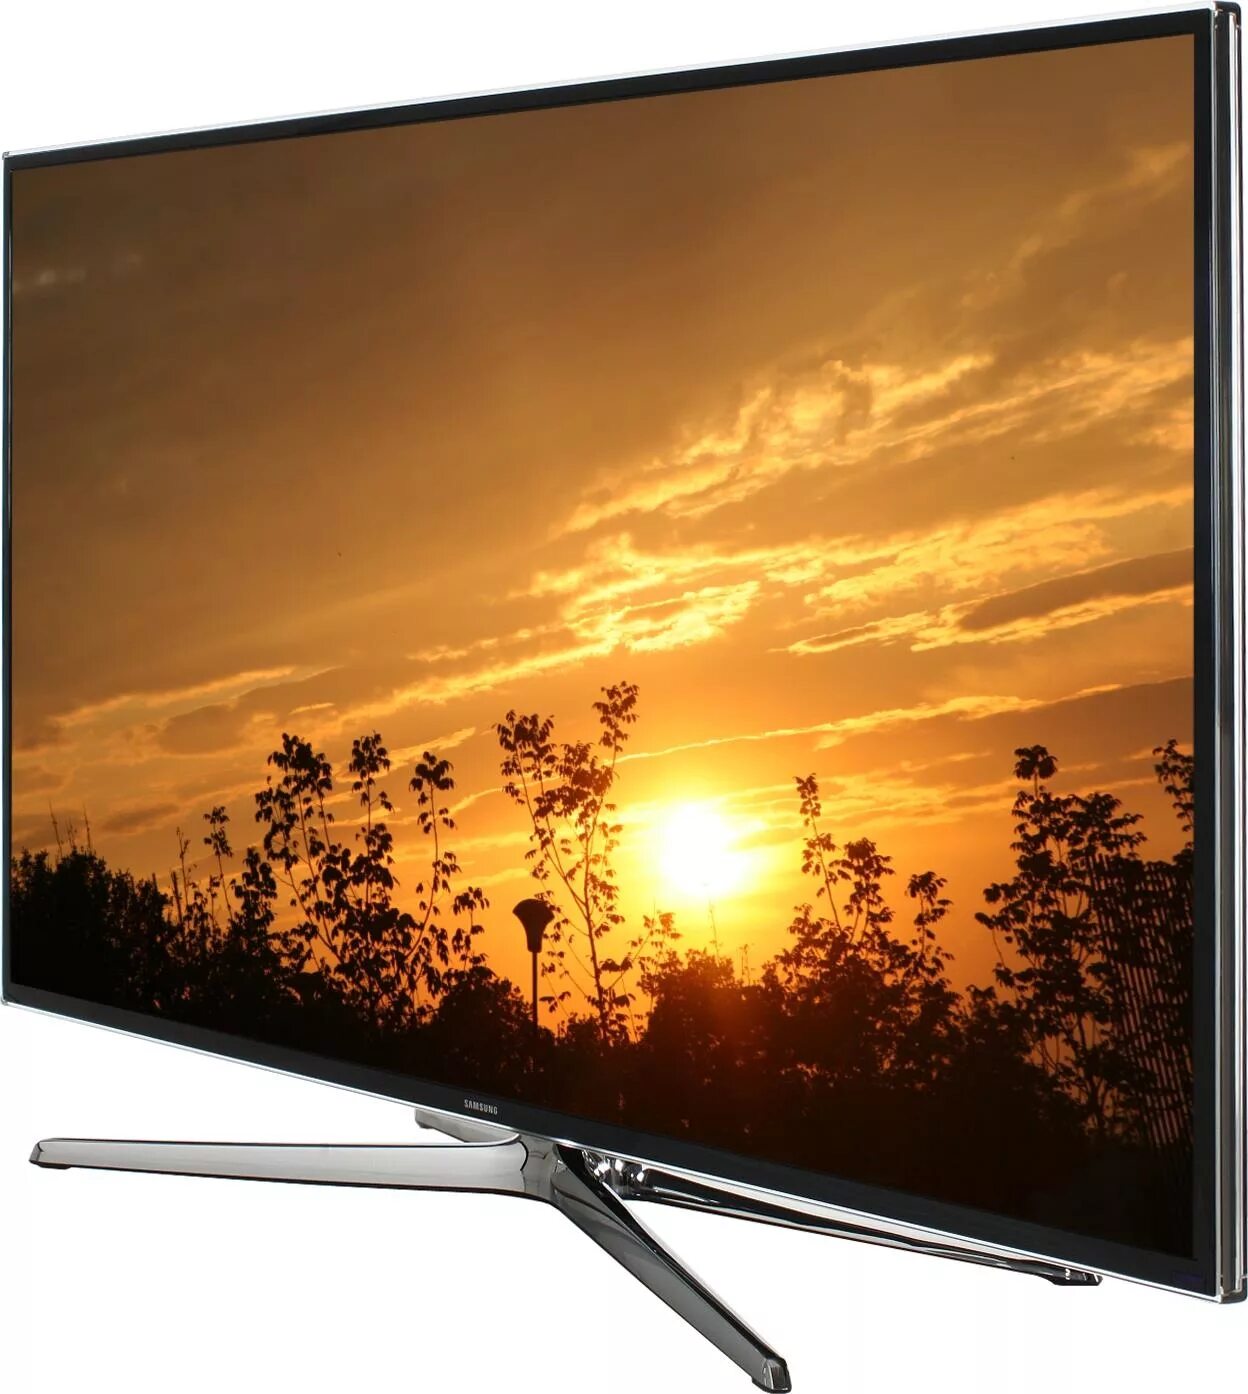 Телевизоры самсунг омск. Samsung led 48 Smart TV. Samsung led 40 Smart TV 2014. Samsung led 40 Smart TV 2013. Телевизор Samsung ue48h6230.